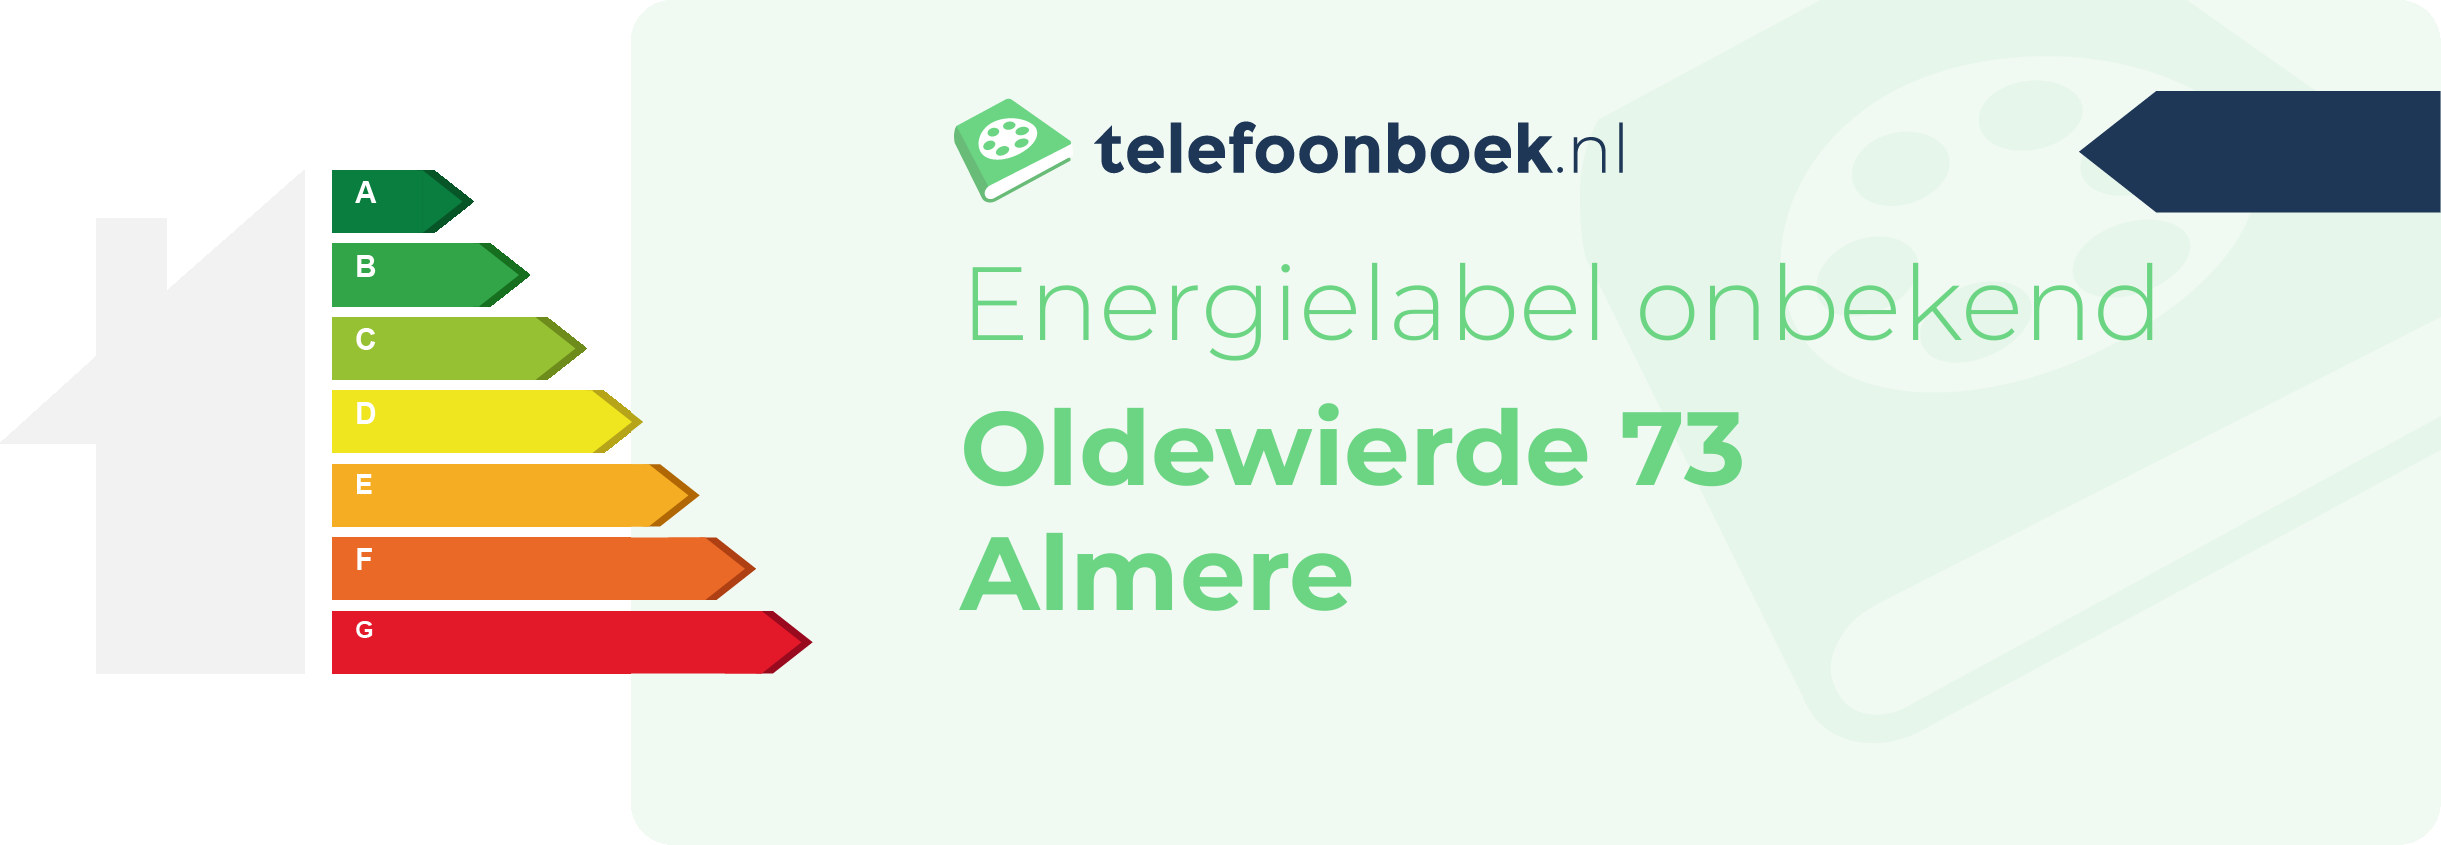 Energielabel Oldewierde 73 Almere